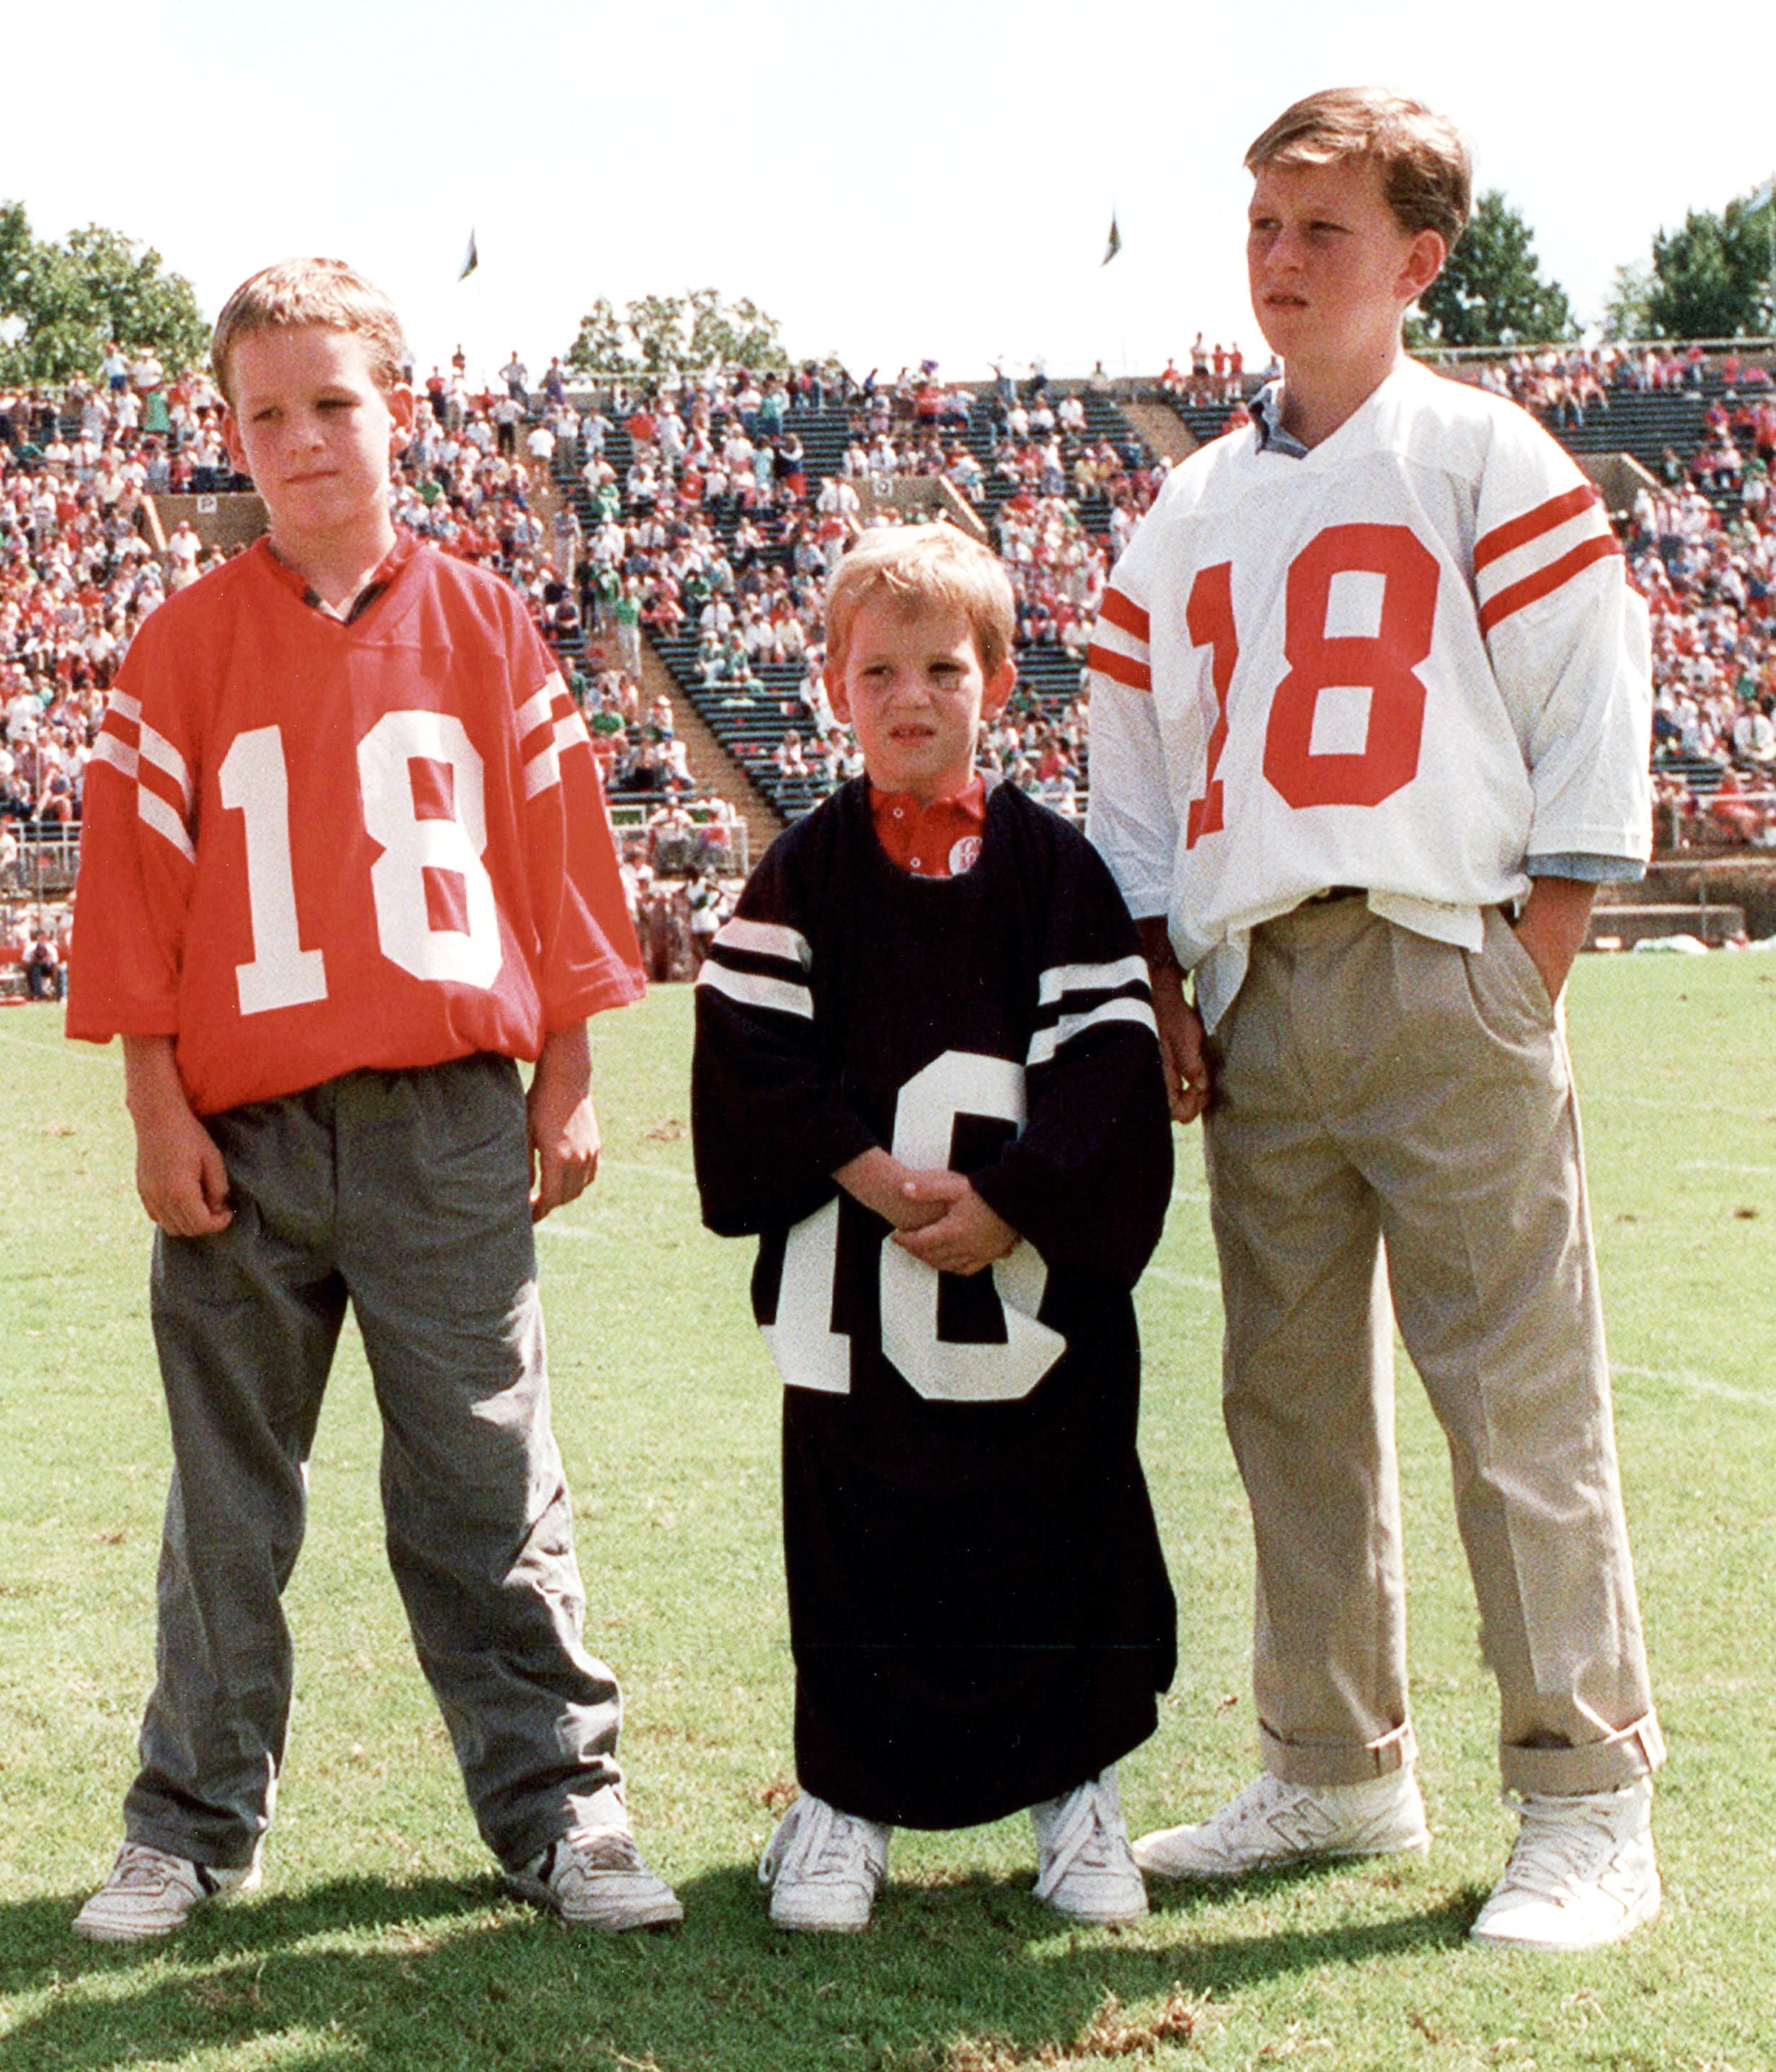 Peyton Manning - Peyton Manning's life, career in photos - ESPN2463 x 2873